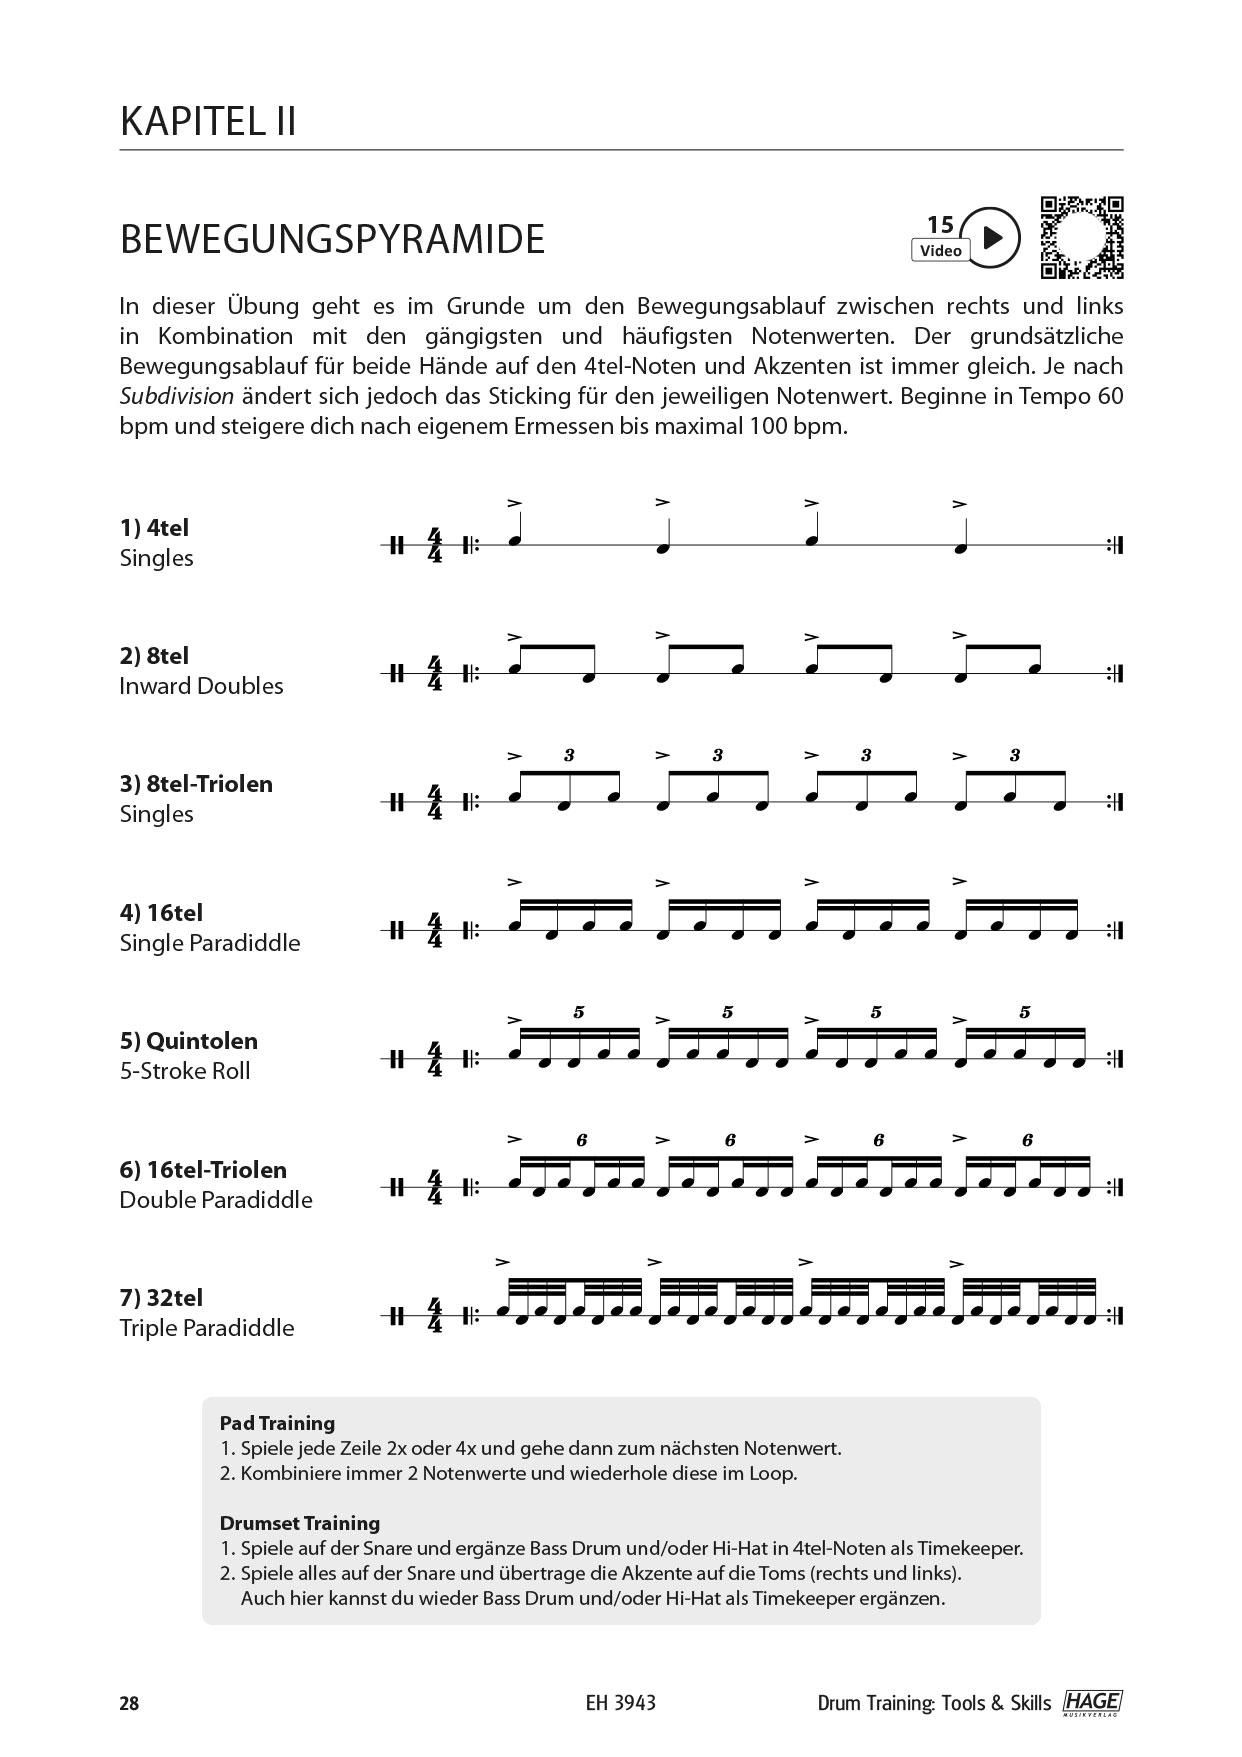 Drum Training Tools & Skills (mit QR-Codes) Seiten 6